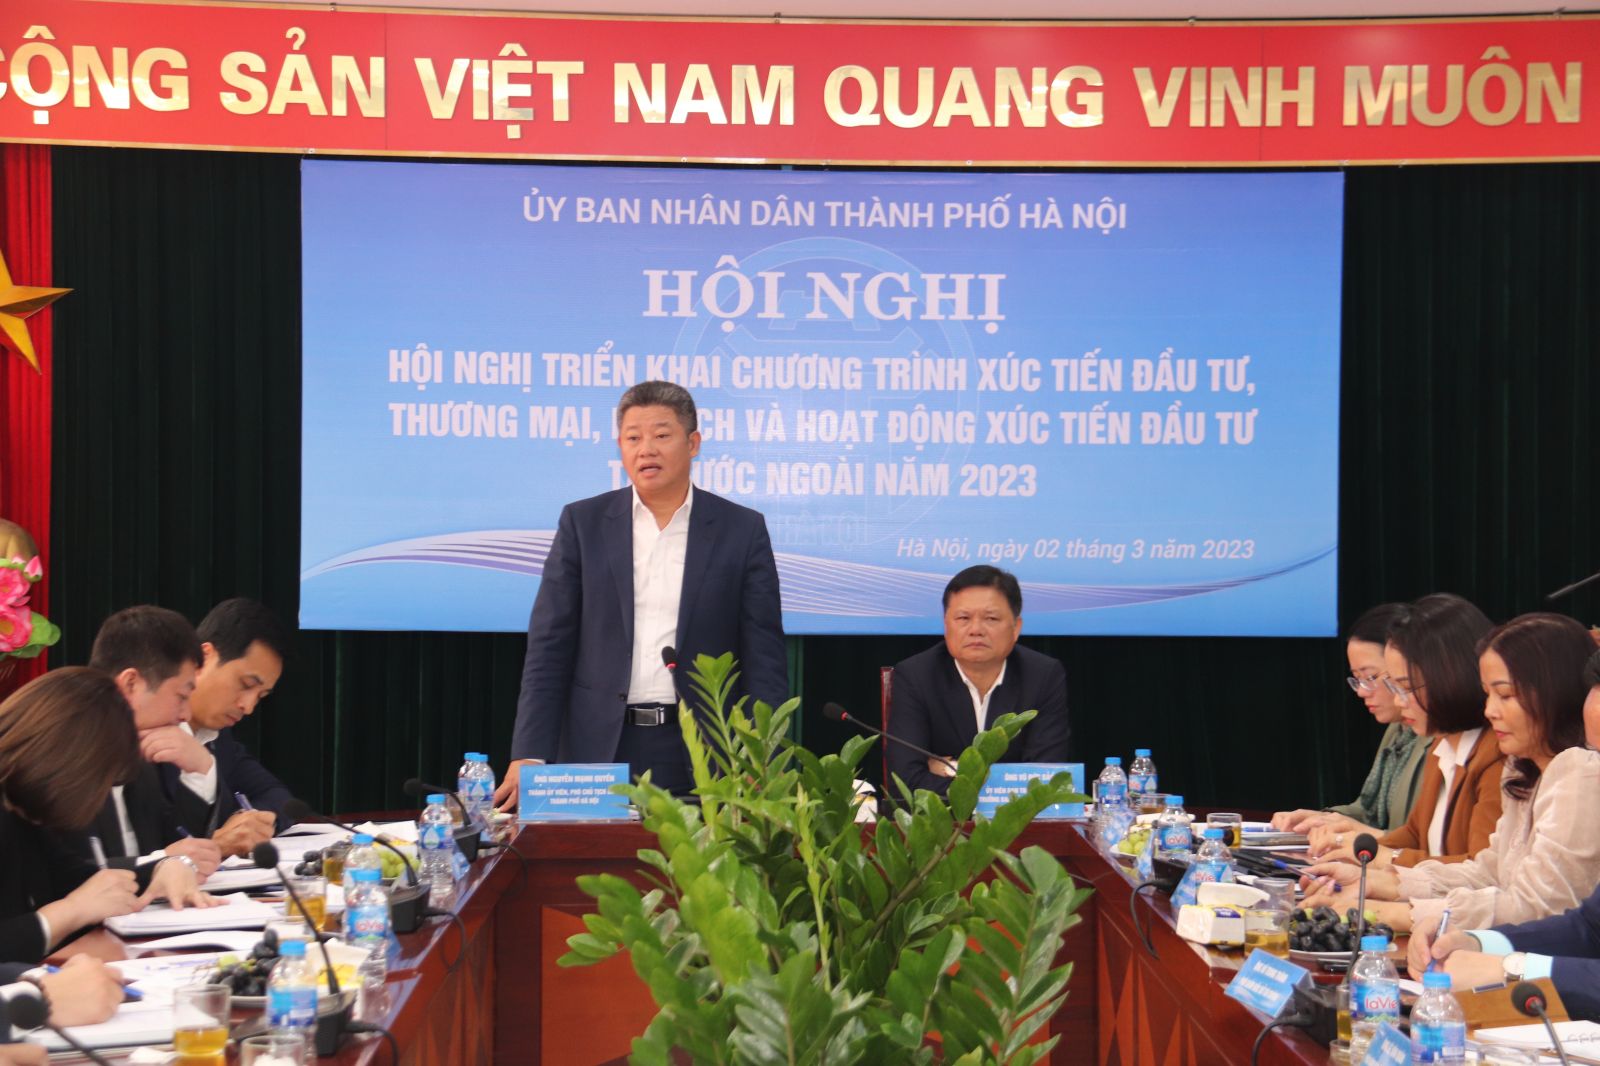 ông Nguyễn Mạnh Quyền, Phó Chủ tịch UBND Thành phố Hà Nộip/tại Hội nghị triển khai chương trình xúc tiến năm 2023